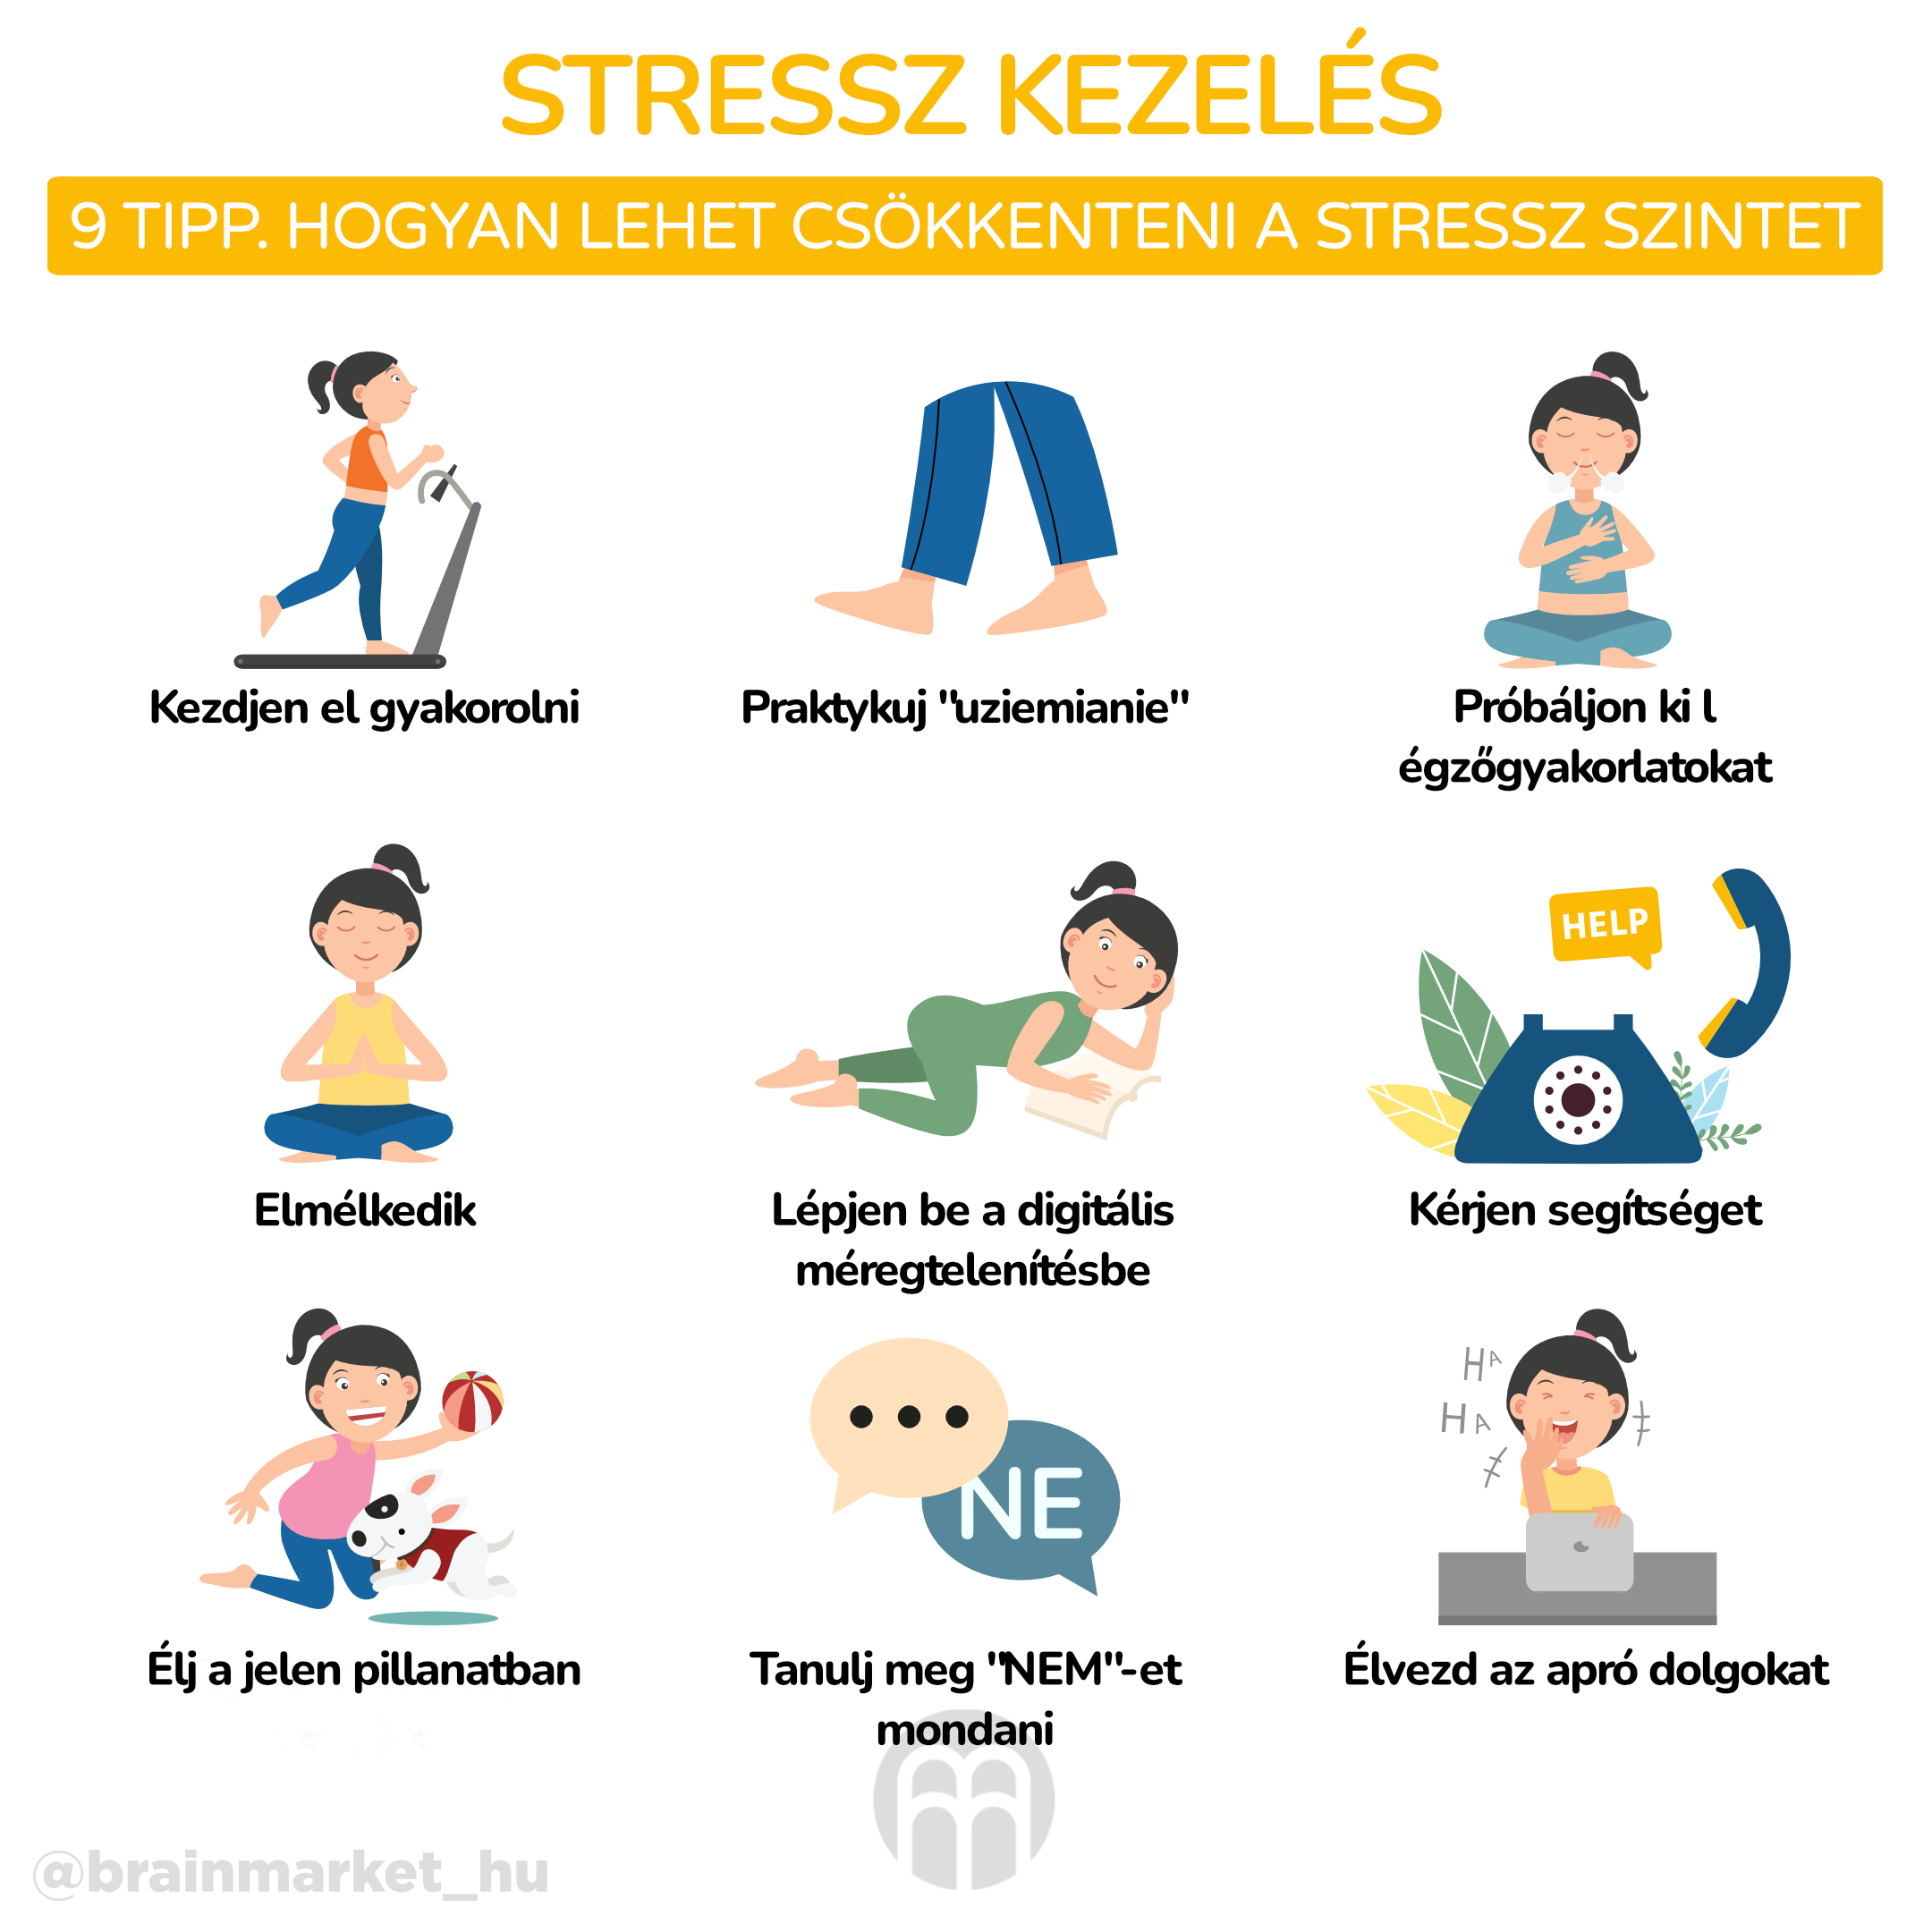 9 tipp a stressz kezelésére